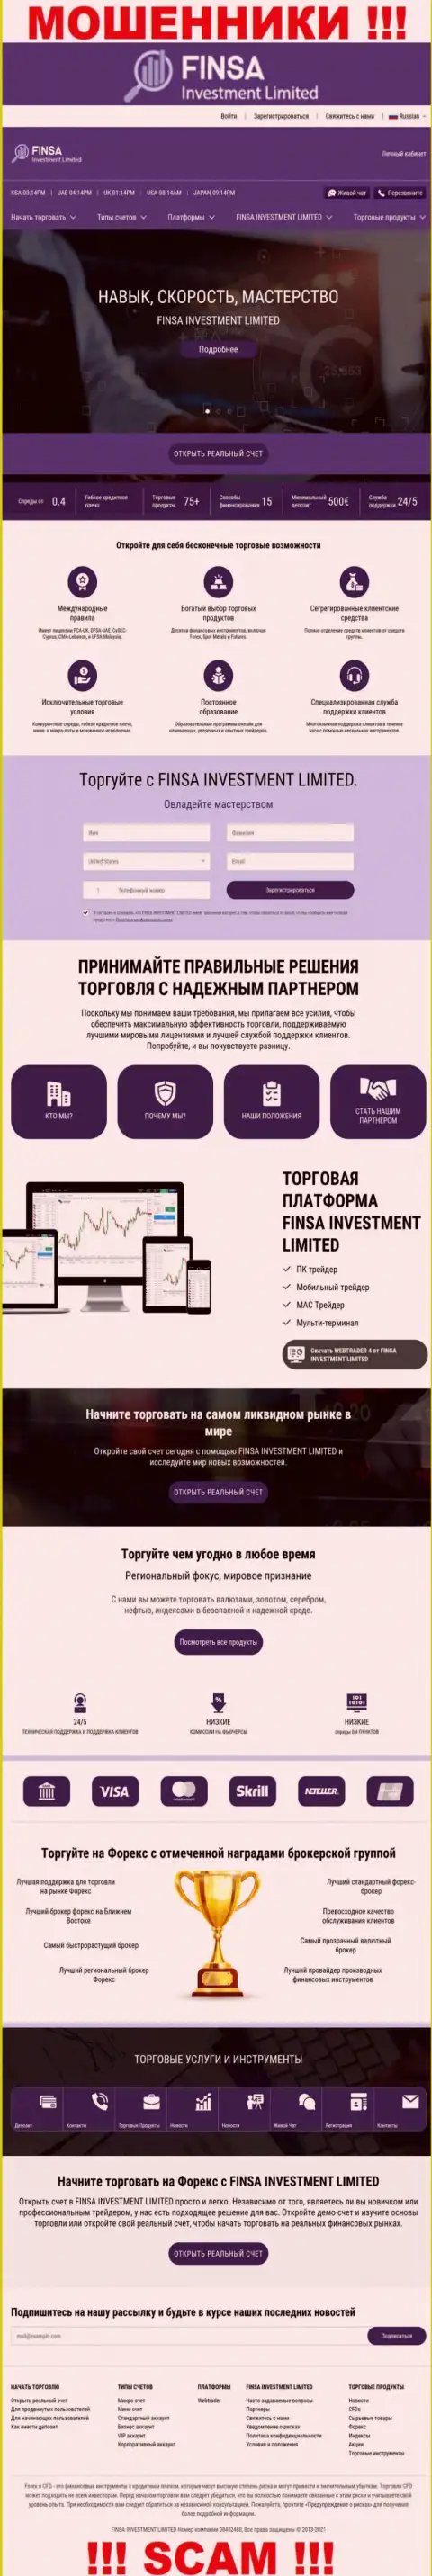 Информационный сервис конторы Finsa Investment Limited, забитый фальшивой информацией